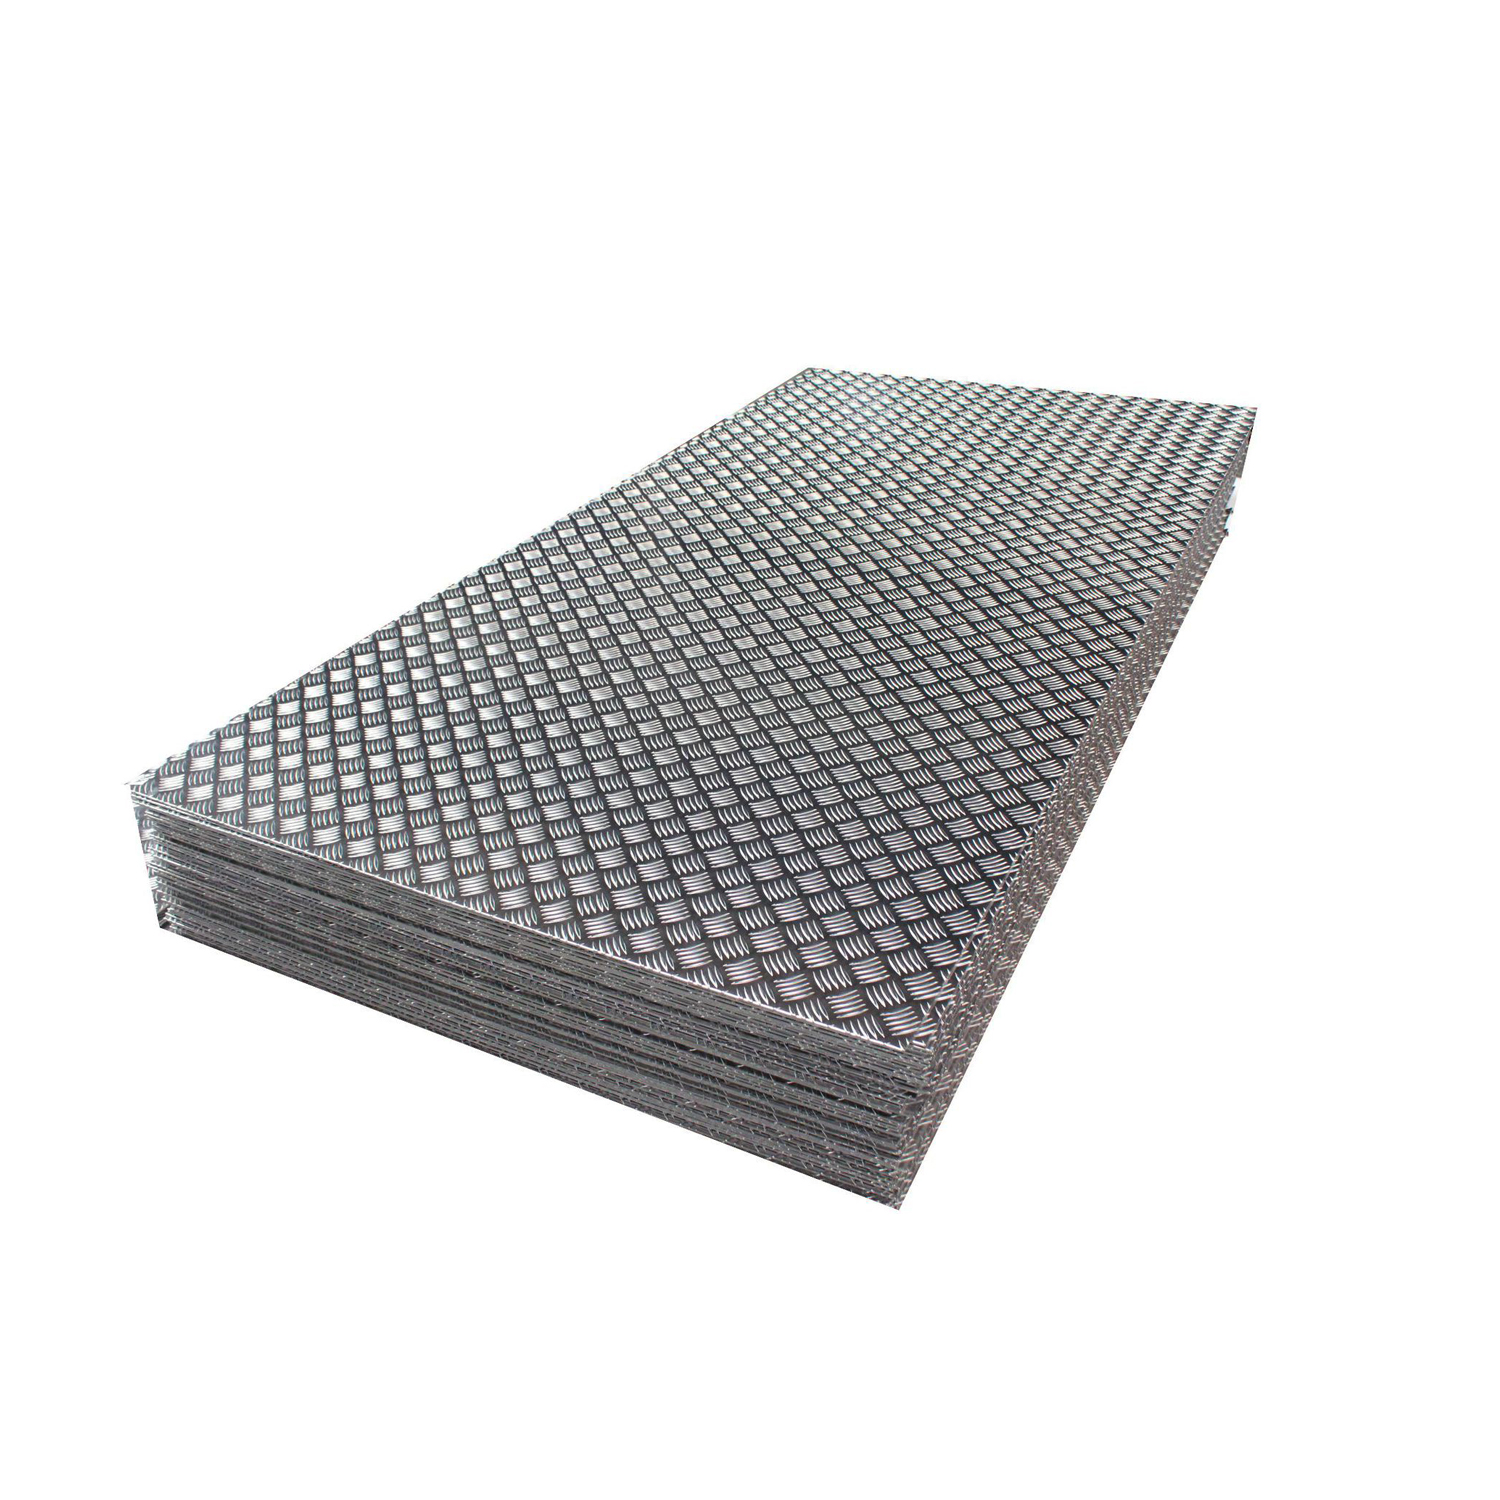 AISI304316antislipembossed/diamond/checkered Stainless Steel Plate Sheet in Stock